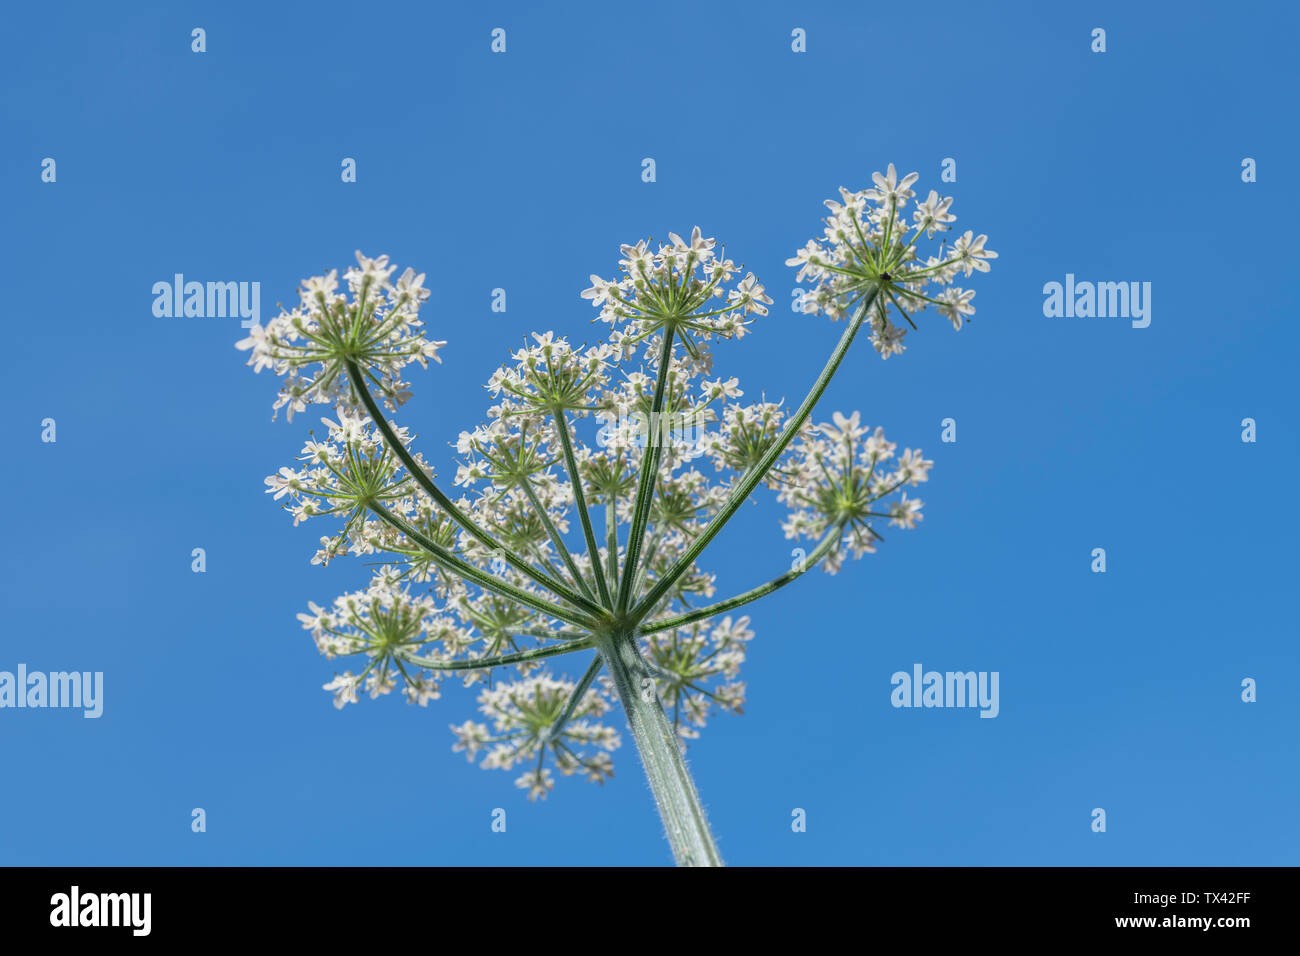 Hogweed / Cow Parsnip - flowers of common umbellifer Hogweed / Heracleum sphondylium growing in hedgerow bank against clear blue summer sky. Stock Photo